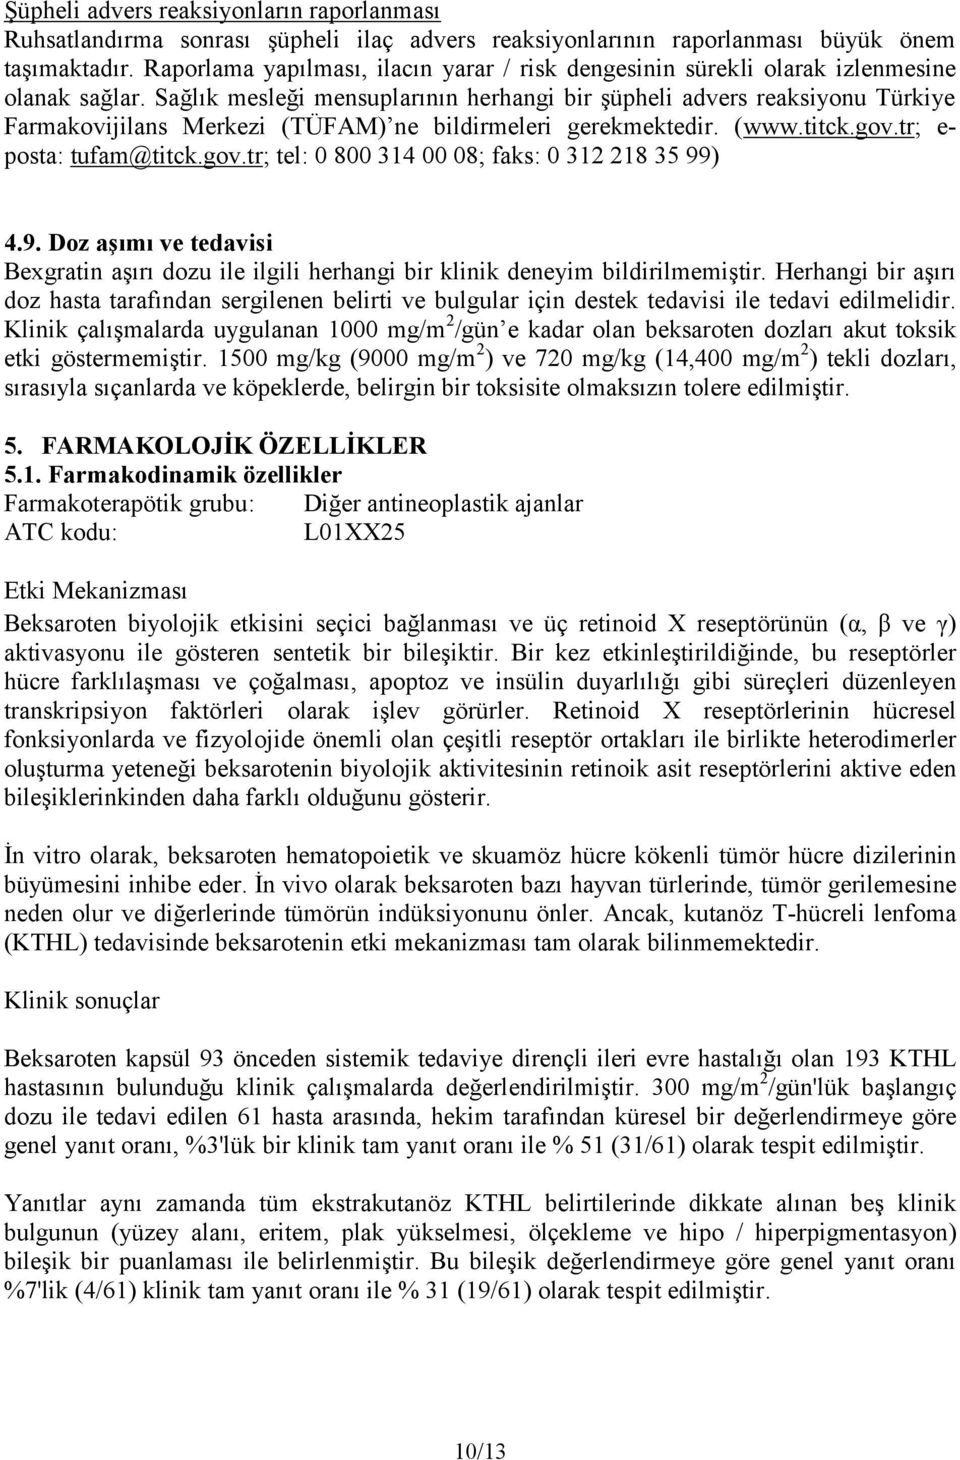 Sağlık mesleği mensuplarının herhangi bir şüpheli advers reaksiyonu Türkiye Farmakovijilans Merkezi (TÜFAM) ne bildirmeleri gerekmektedir. ( www.titck.gov.